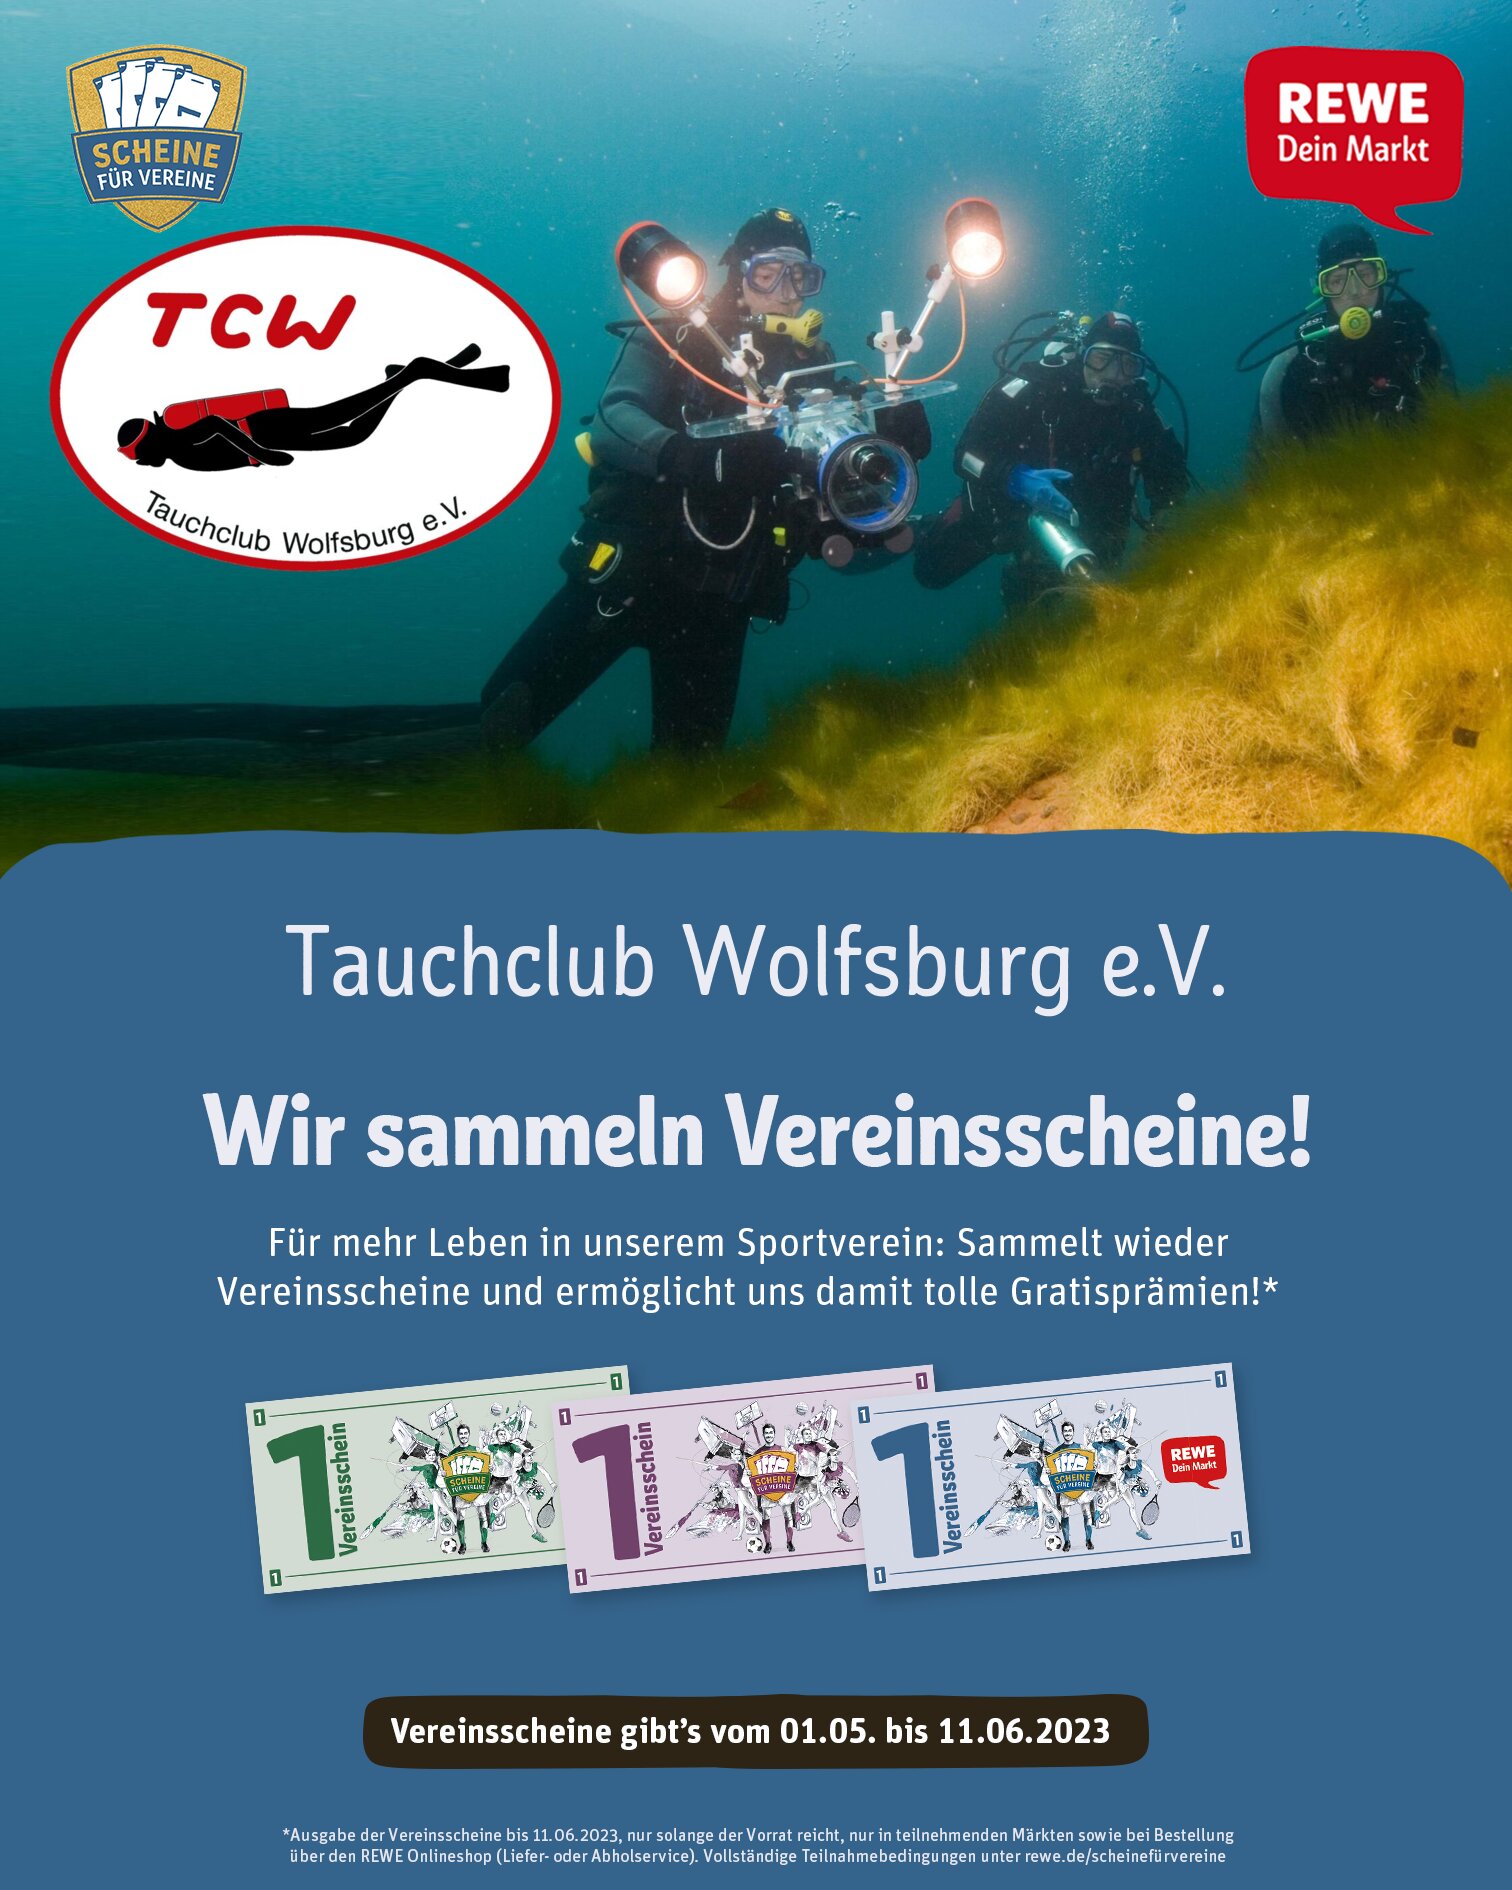 img/news/REWE_Scheine-fuer-Vereine_Poster-Feed.jpg